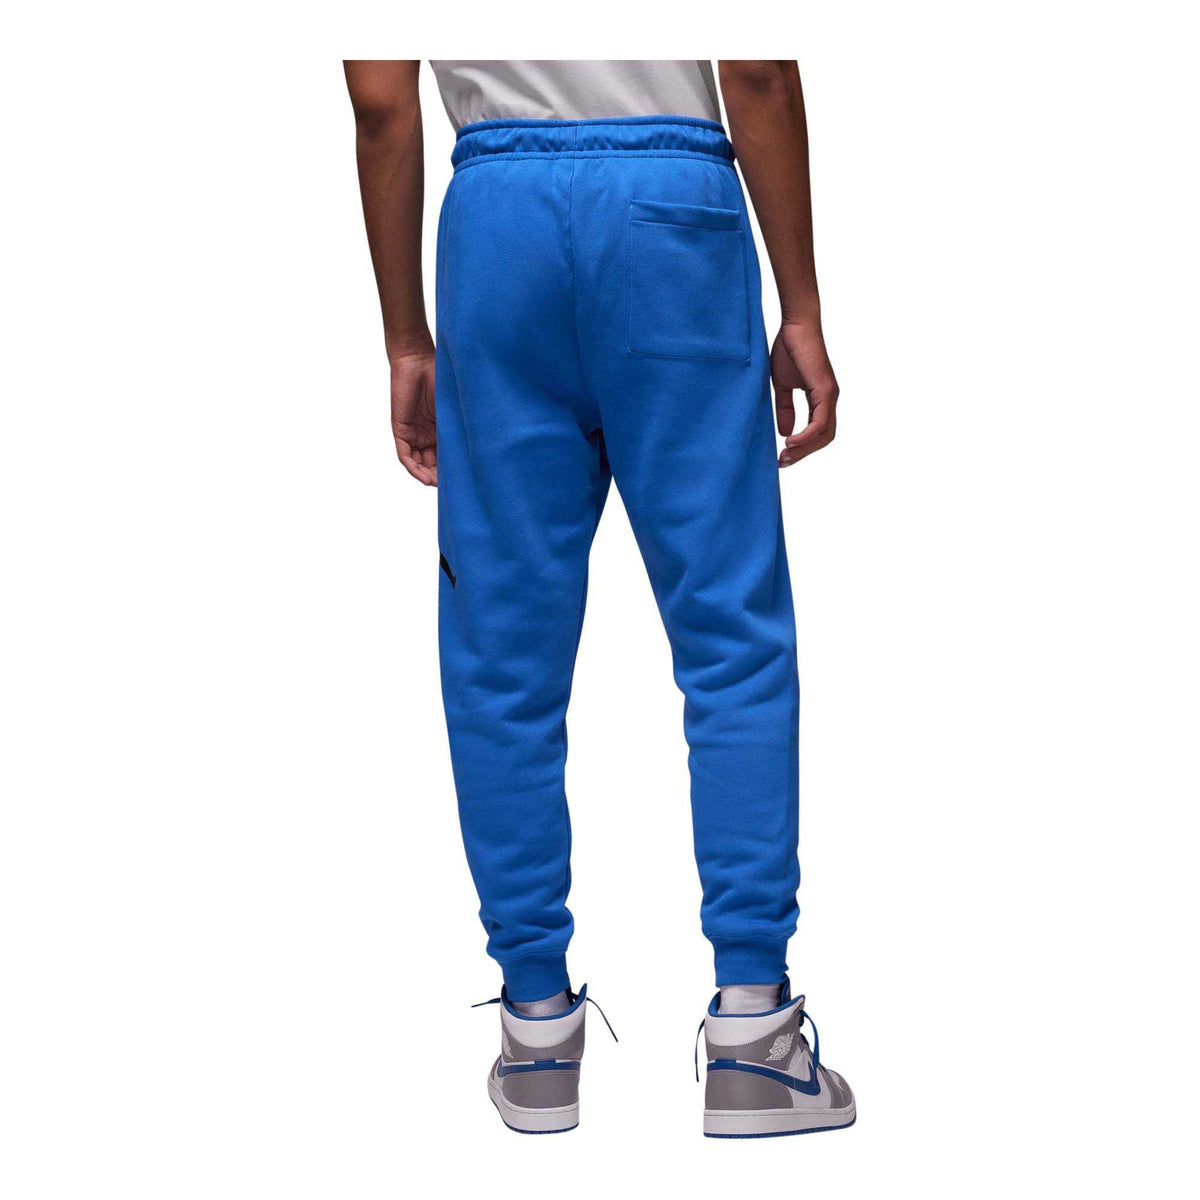 Jordan Men's Essentials Fleece Baseline Pants